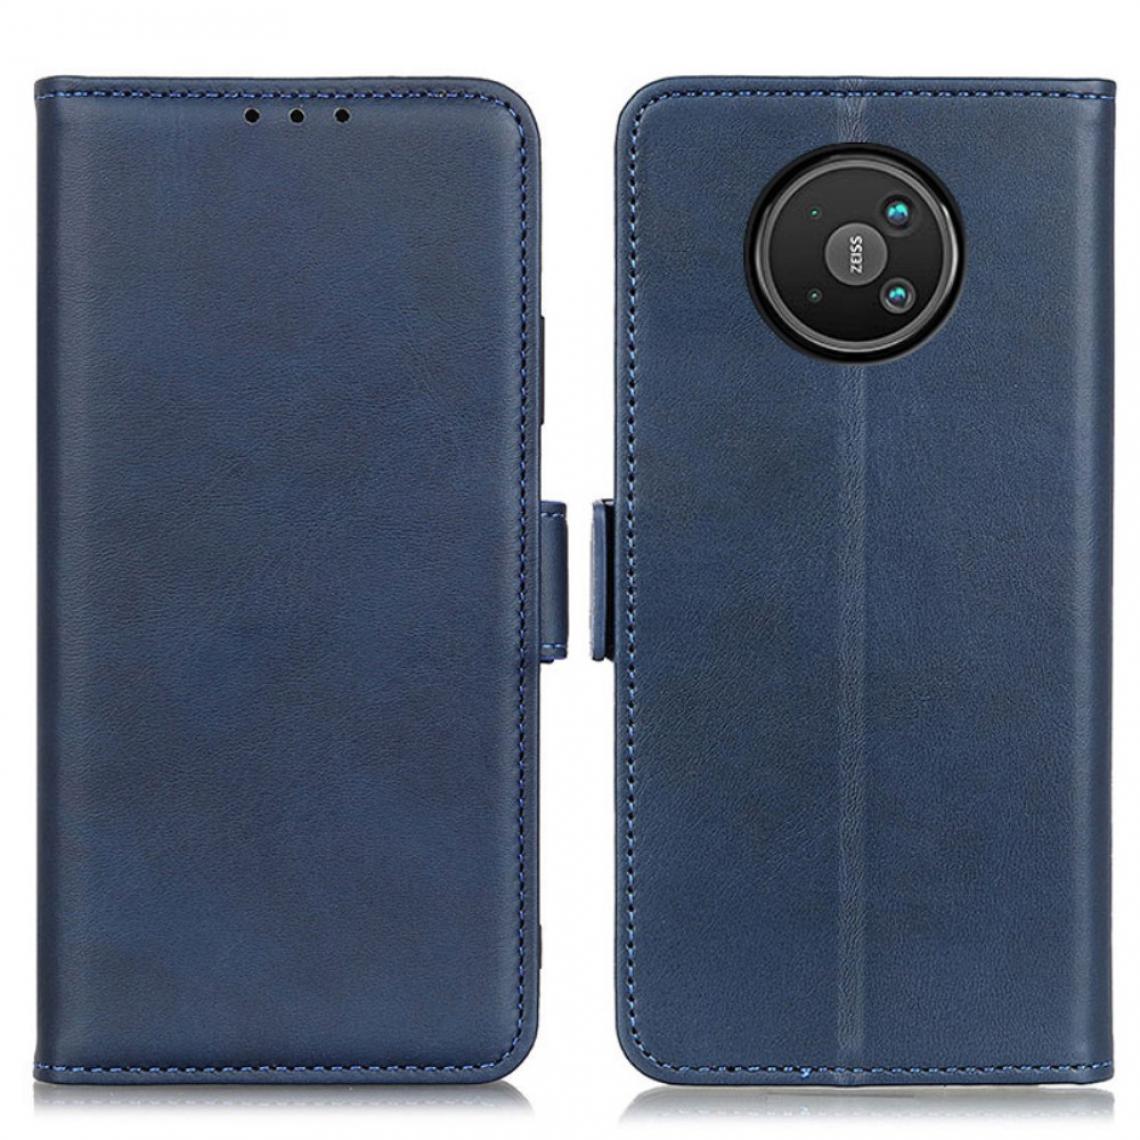 Other - Etui en PU Double fermoir magnétique bleu pour votre Nokia 8 V 5G - Coque, étui smartphone